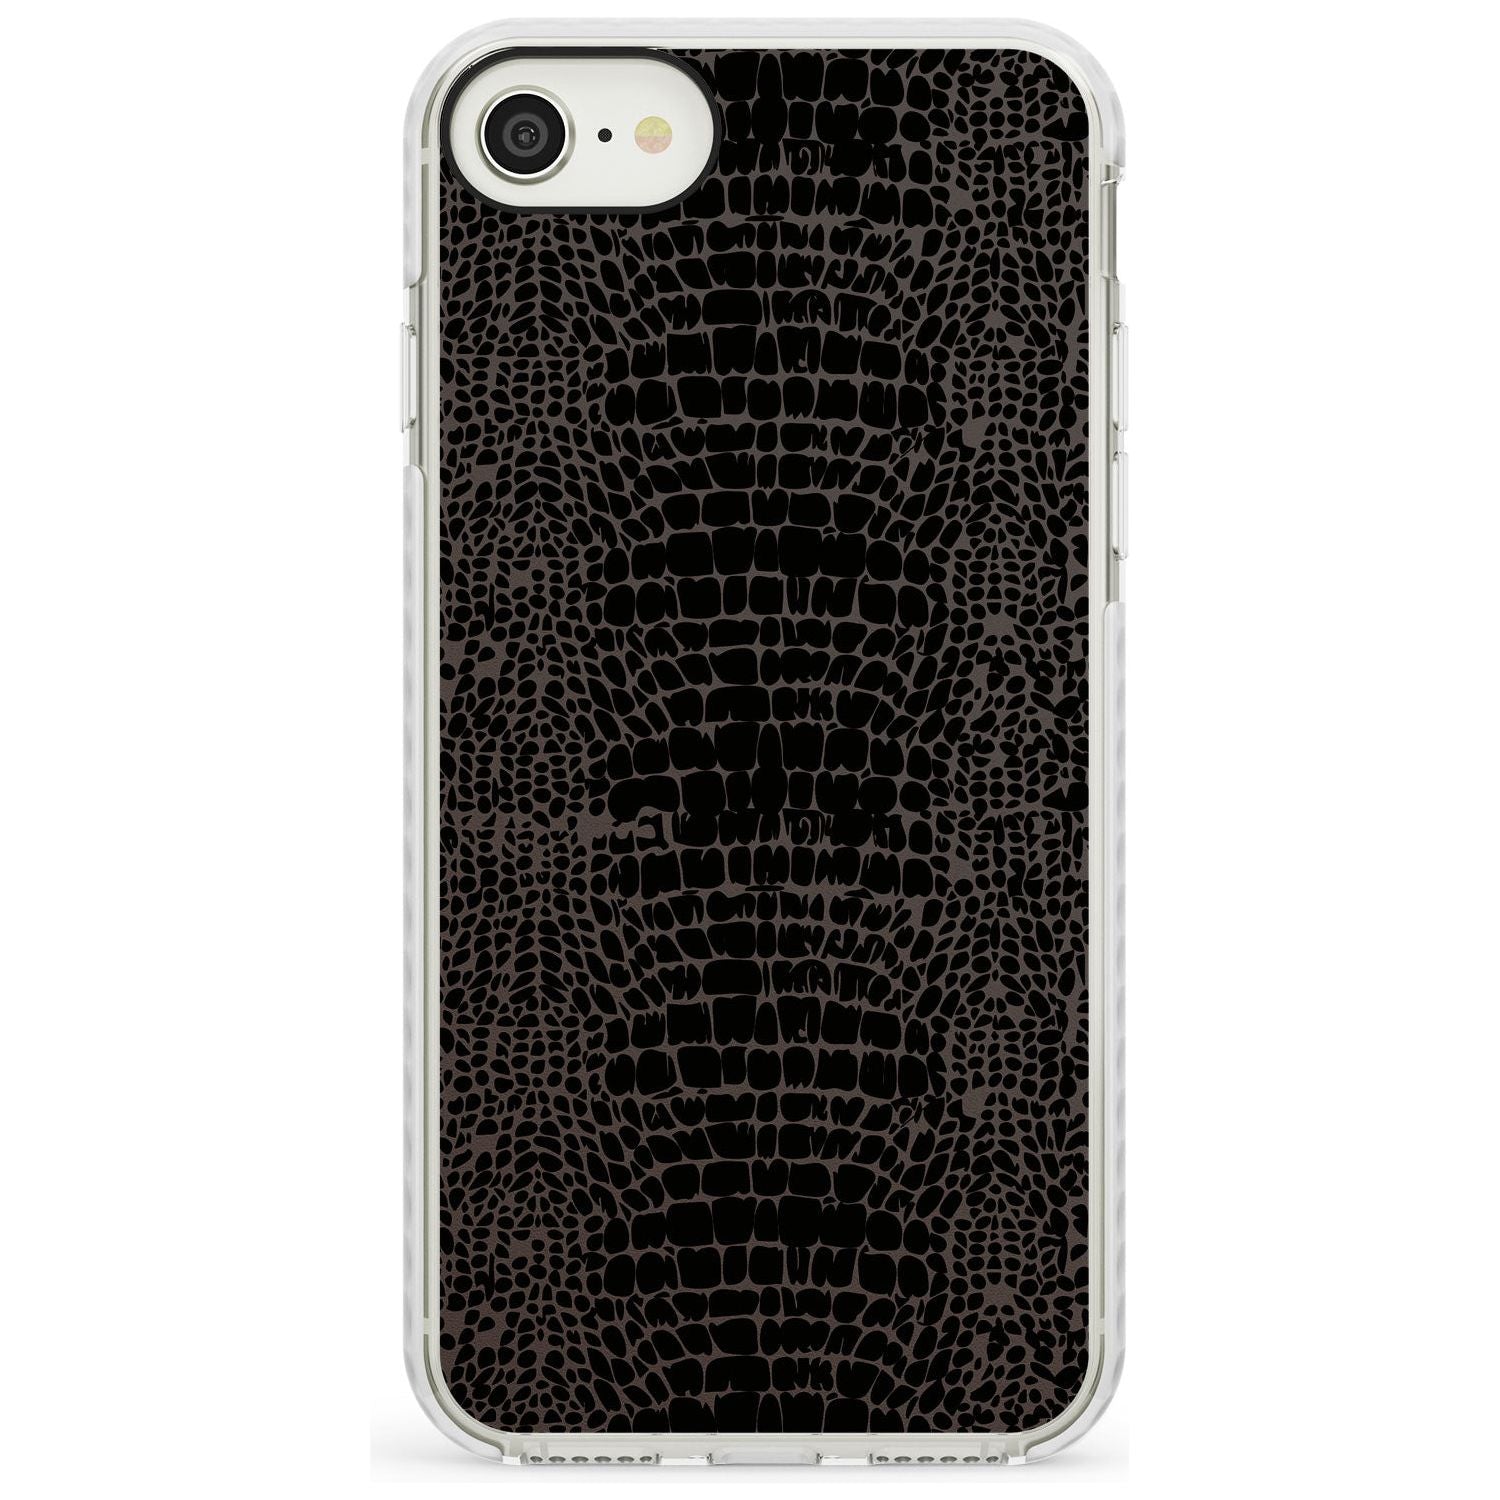 Dark Animal Print Pattern Snake Skin Impact Phone Case for iPhone SE 8 7 Plus